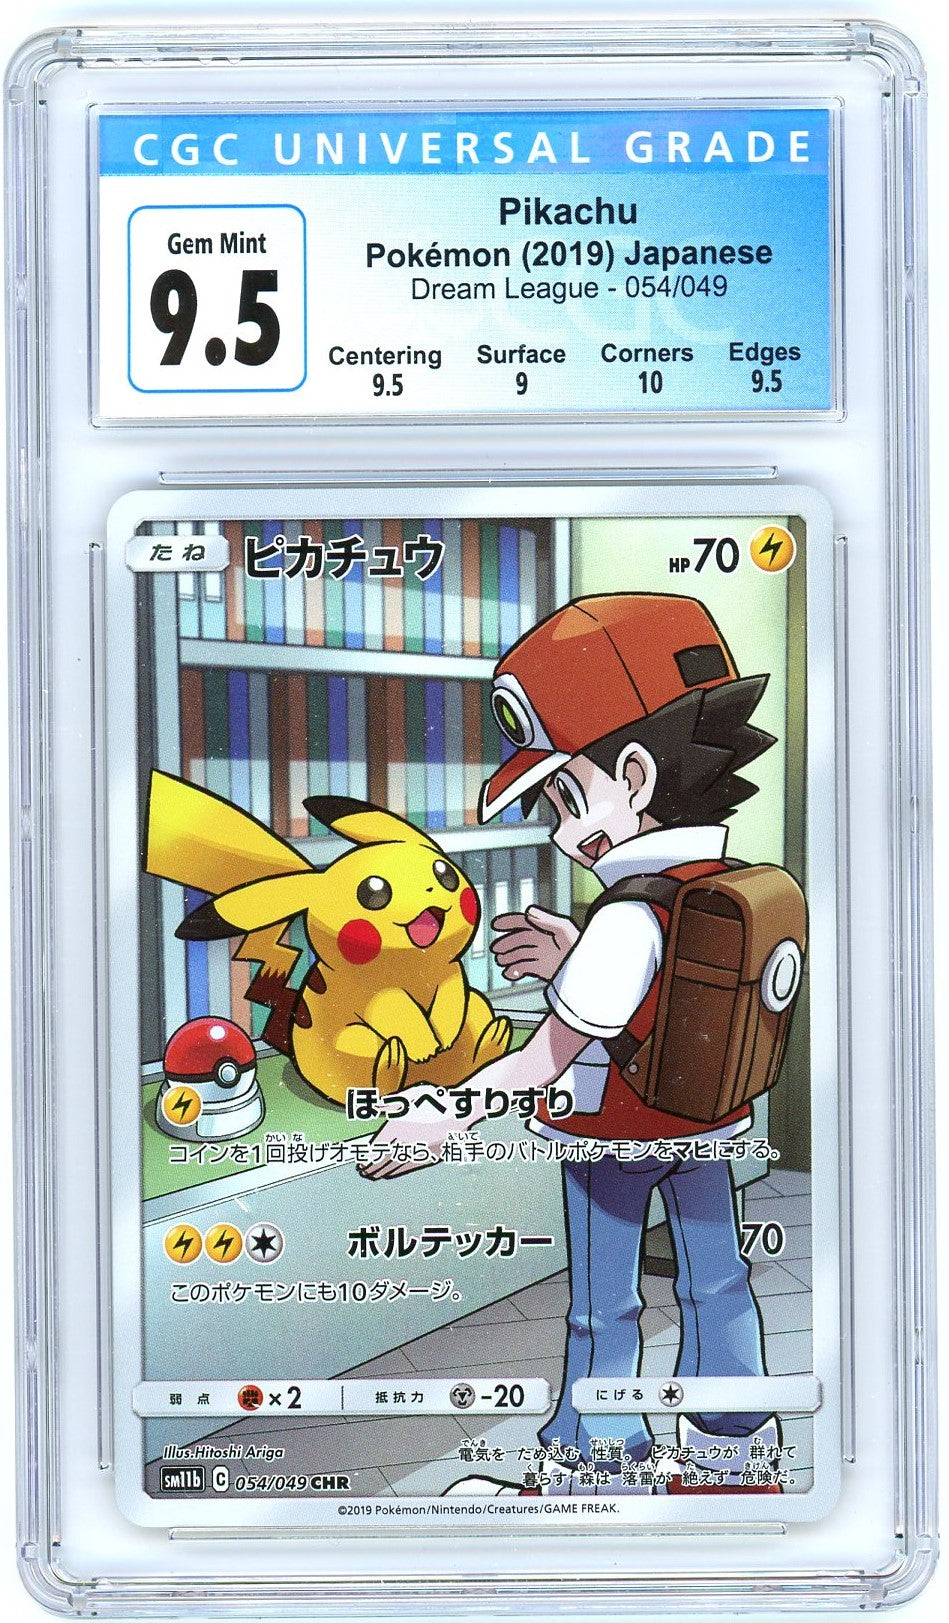 CGC Gem Mint 9.5 - 2019 Pokémon - Pikachu - Dream League - Japanese